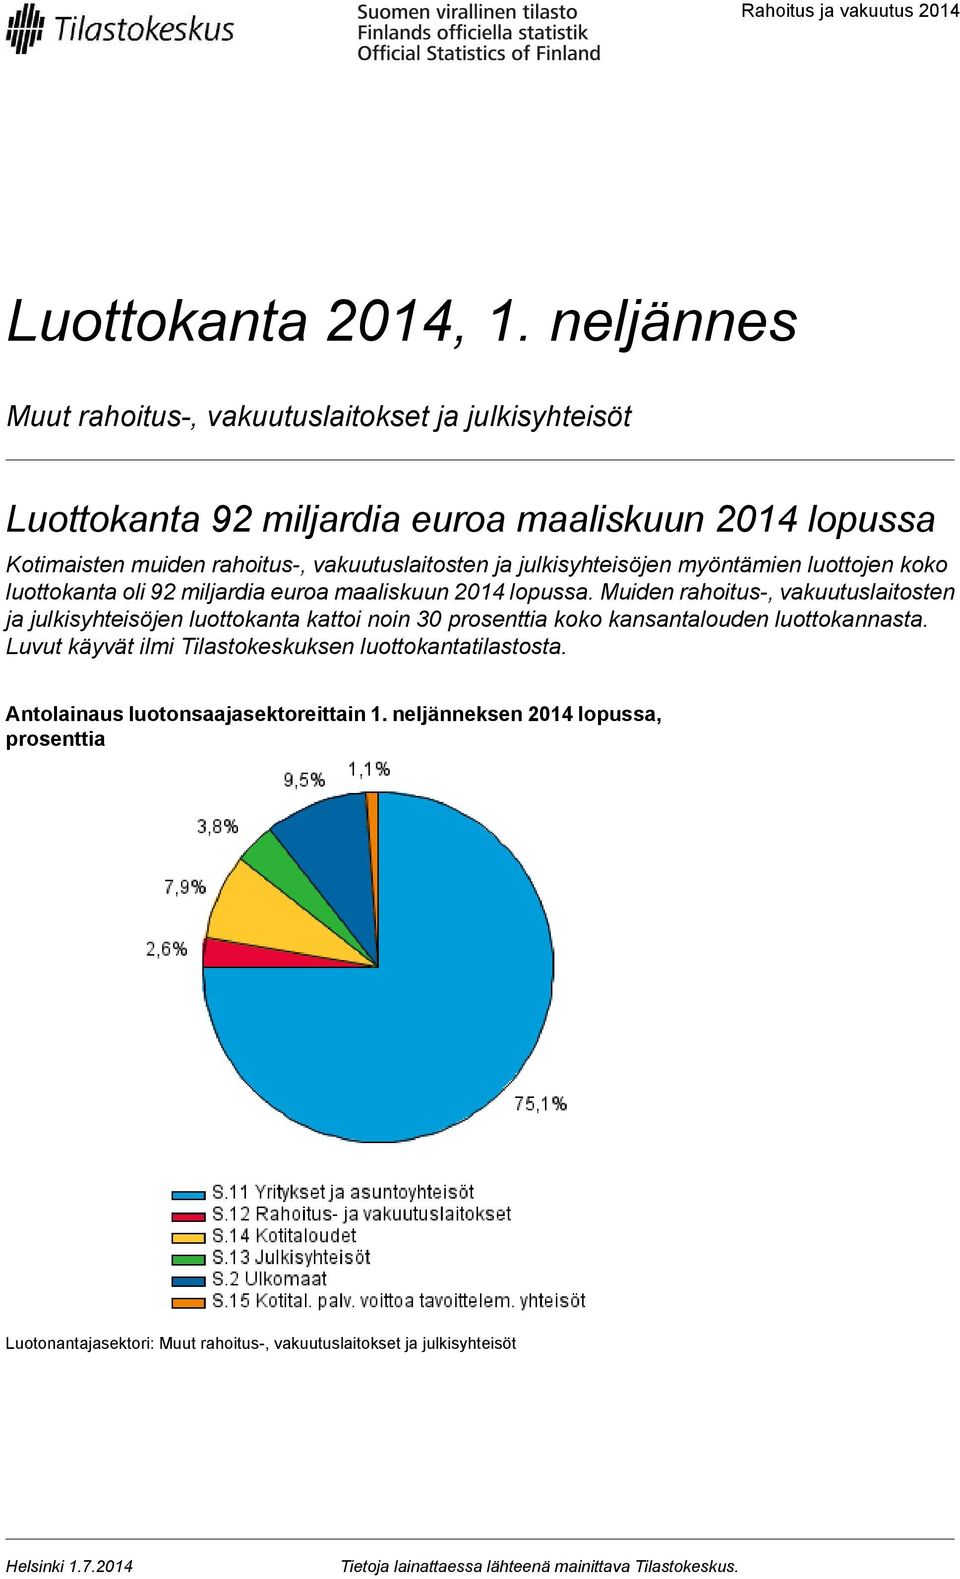 julkisyhteisöjen myöntämien luottojen koko luottokanta oli 92 miljardia euroa maaliskuun 2014 lopussa.